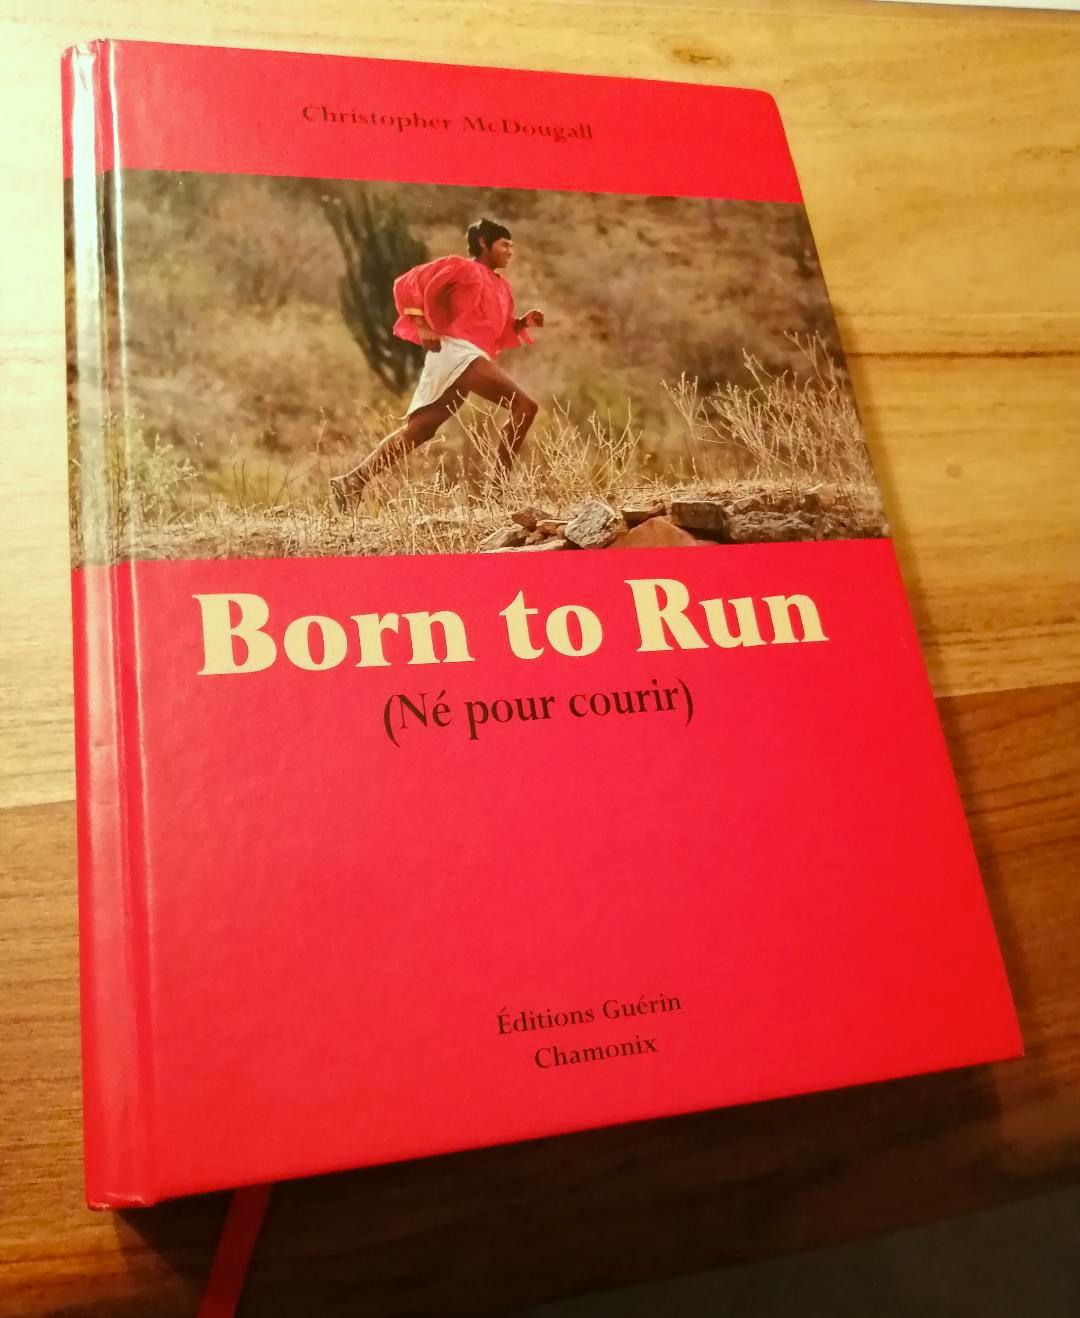 Born to run – le résumé